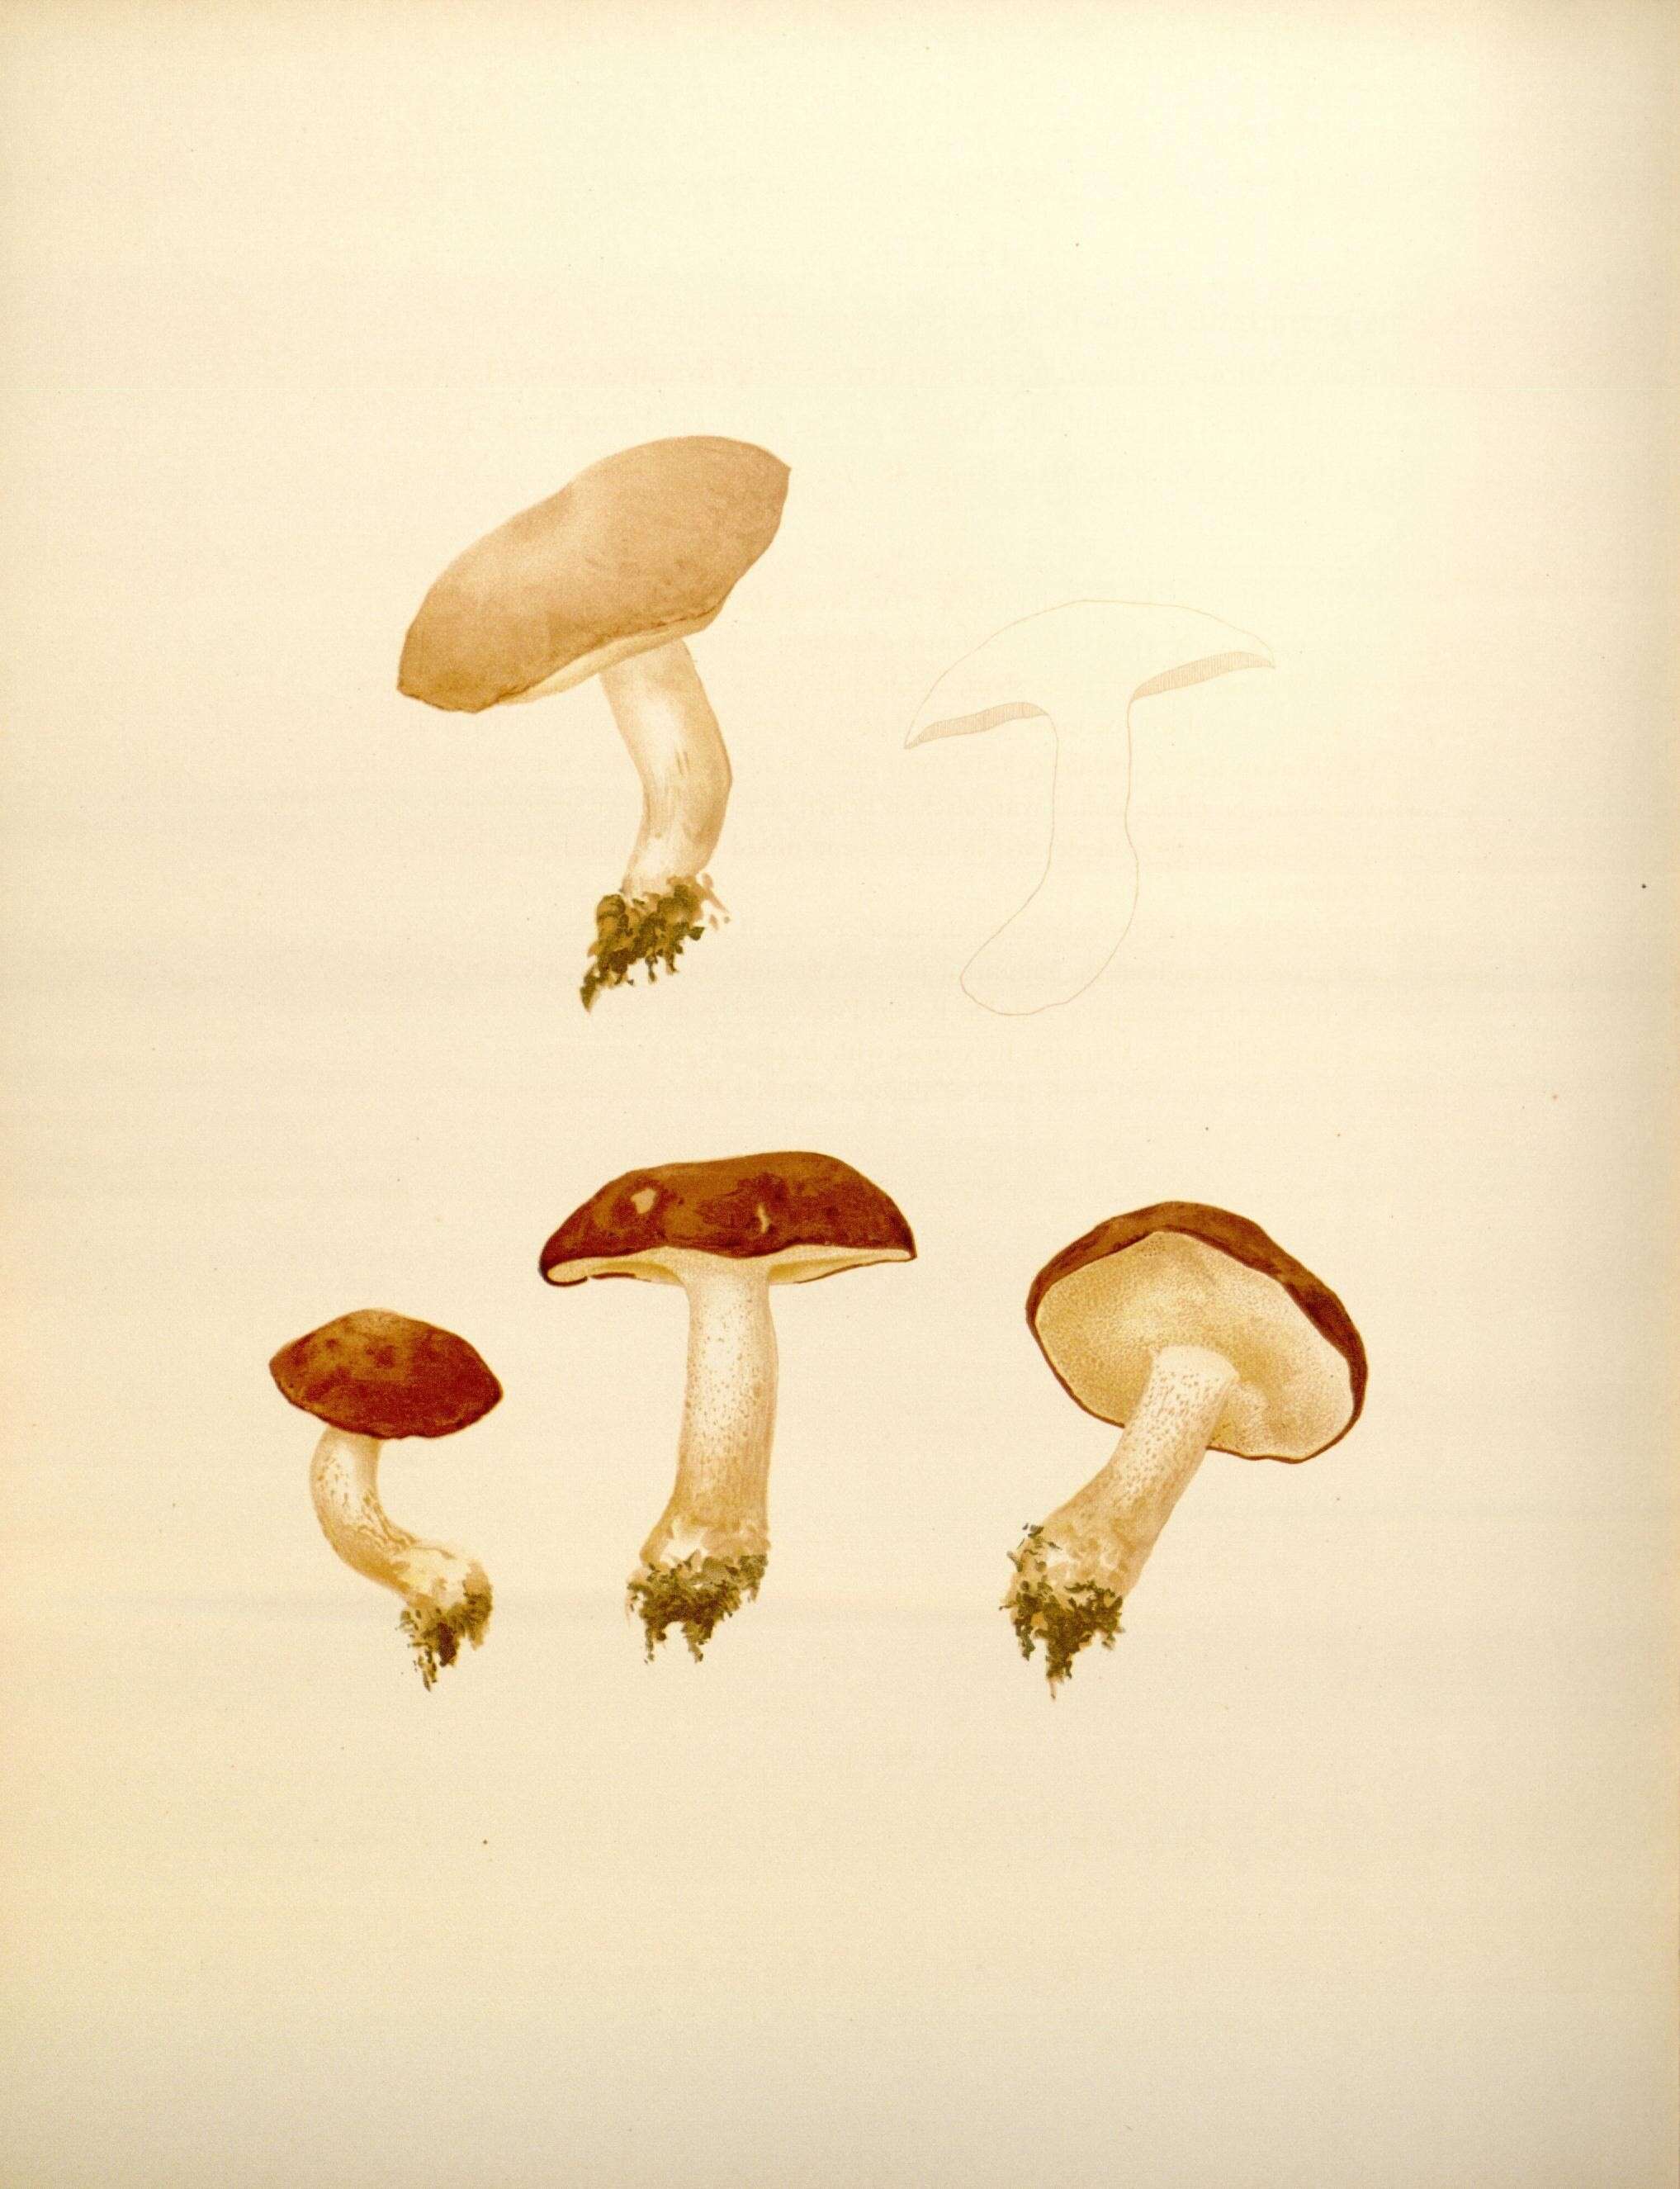 Image of Suillus granulatus (L.) Roussel 1796